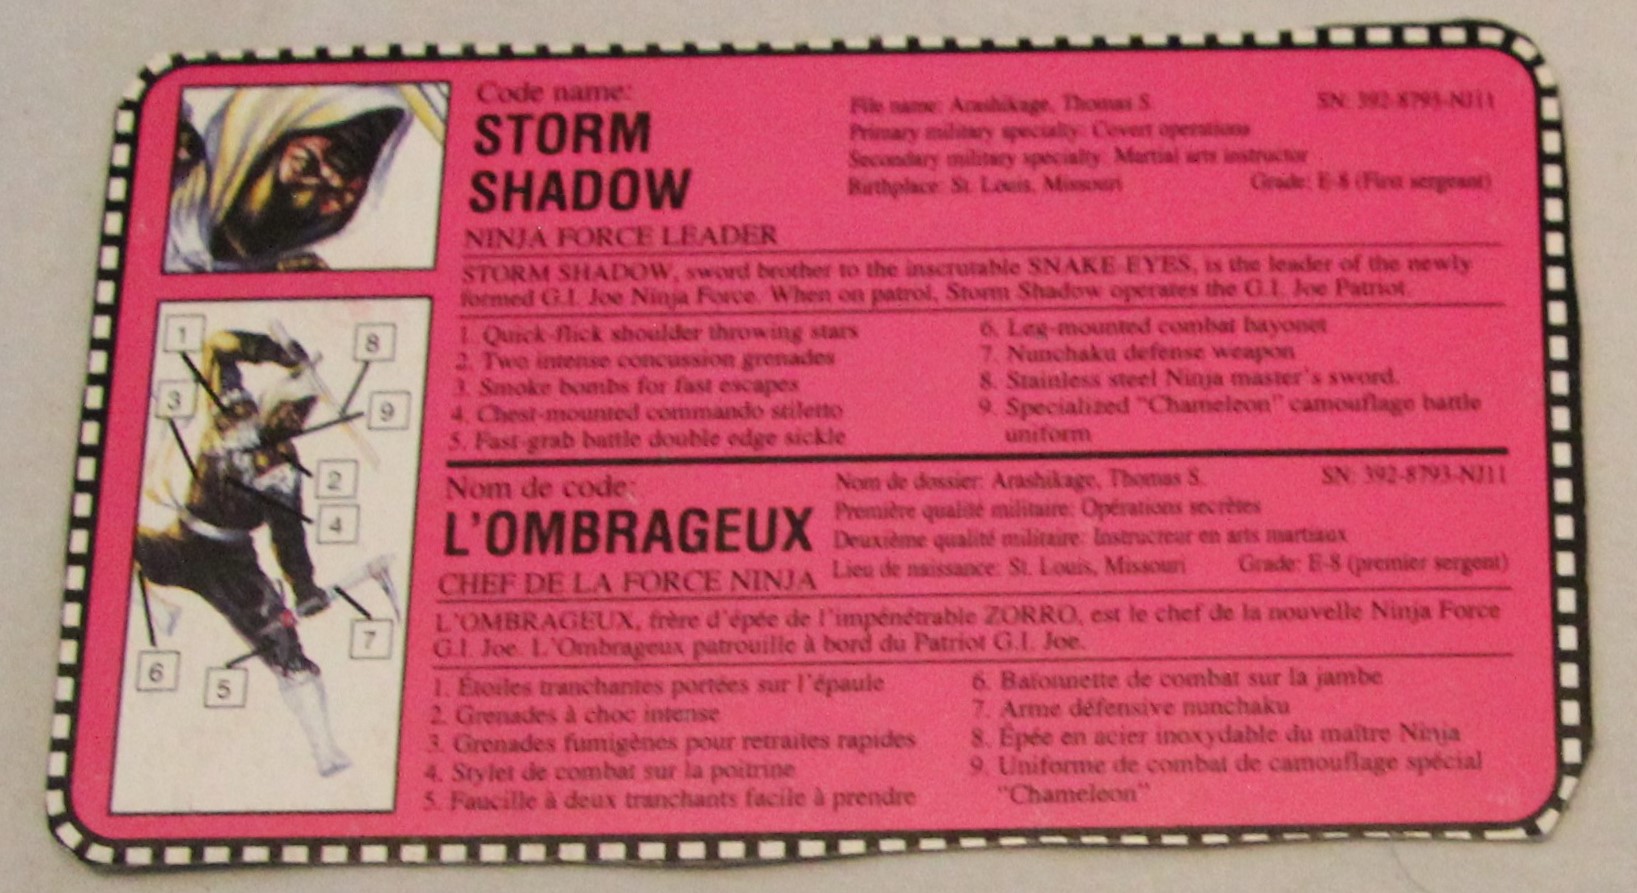 1992 stormshadow file card